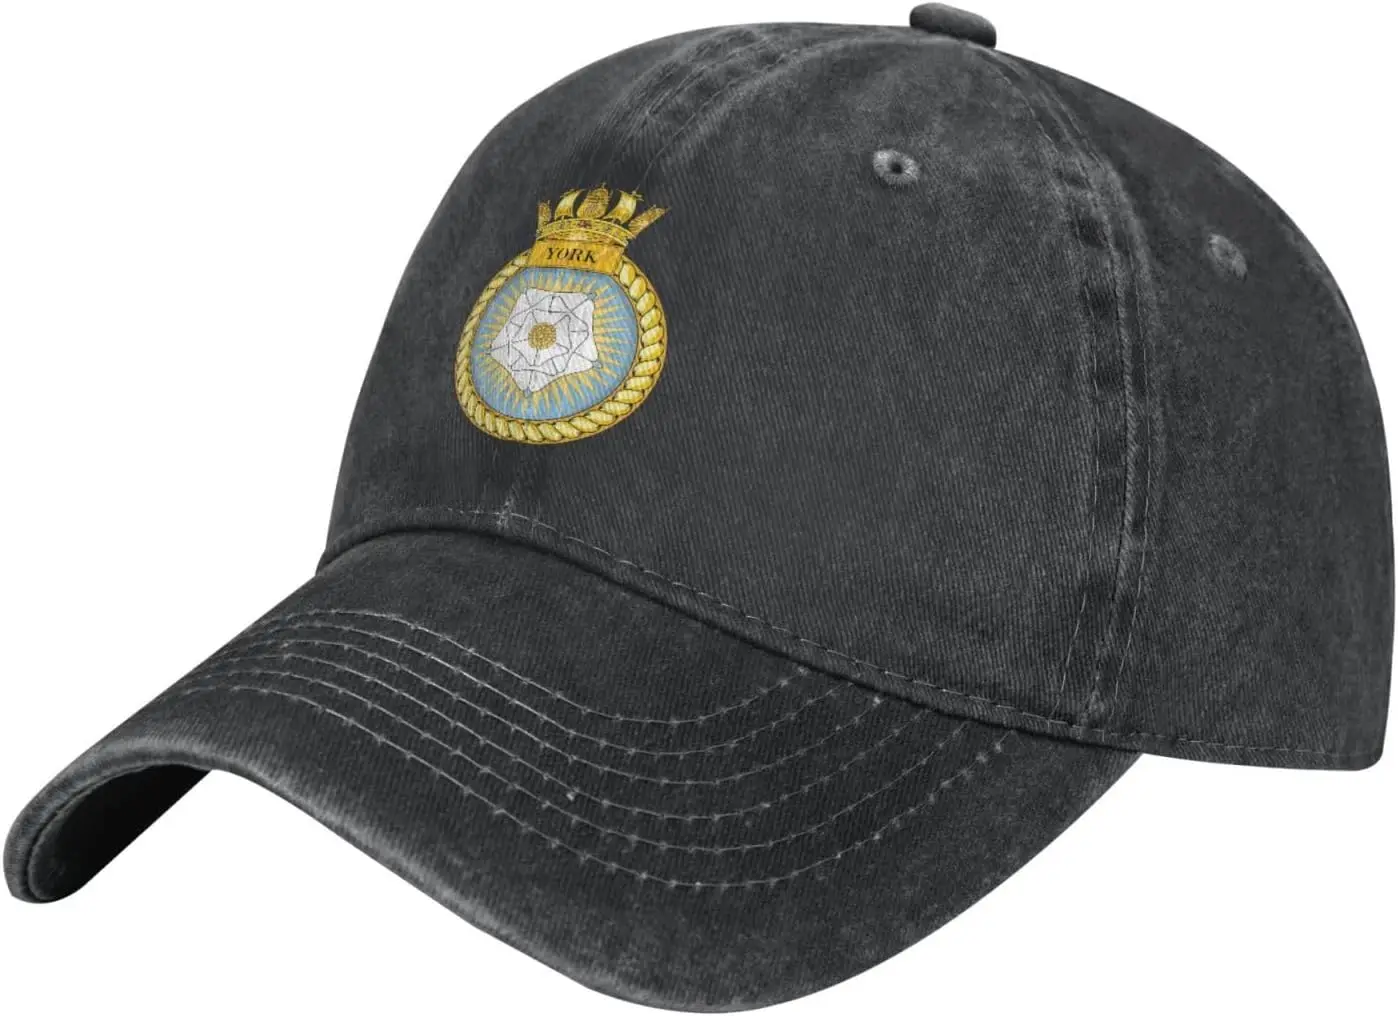 

Кепка HMS York Trucker-бейсболка из хлопка с эффектом потертости, кепки для папы, темно-синие кепки в стиле милитари